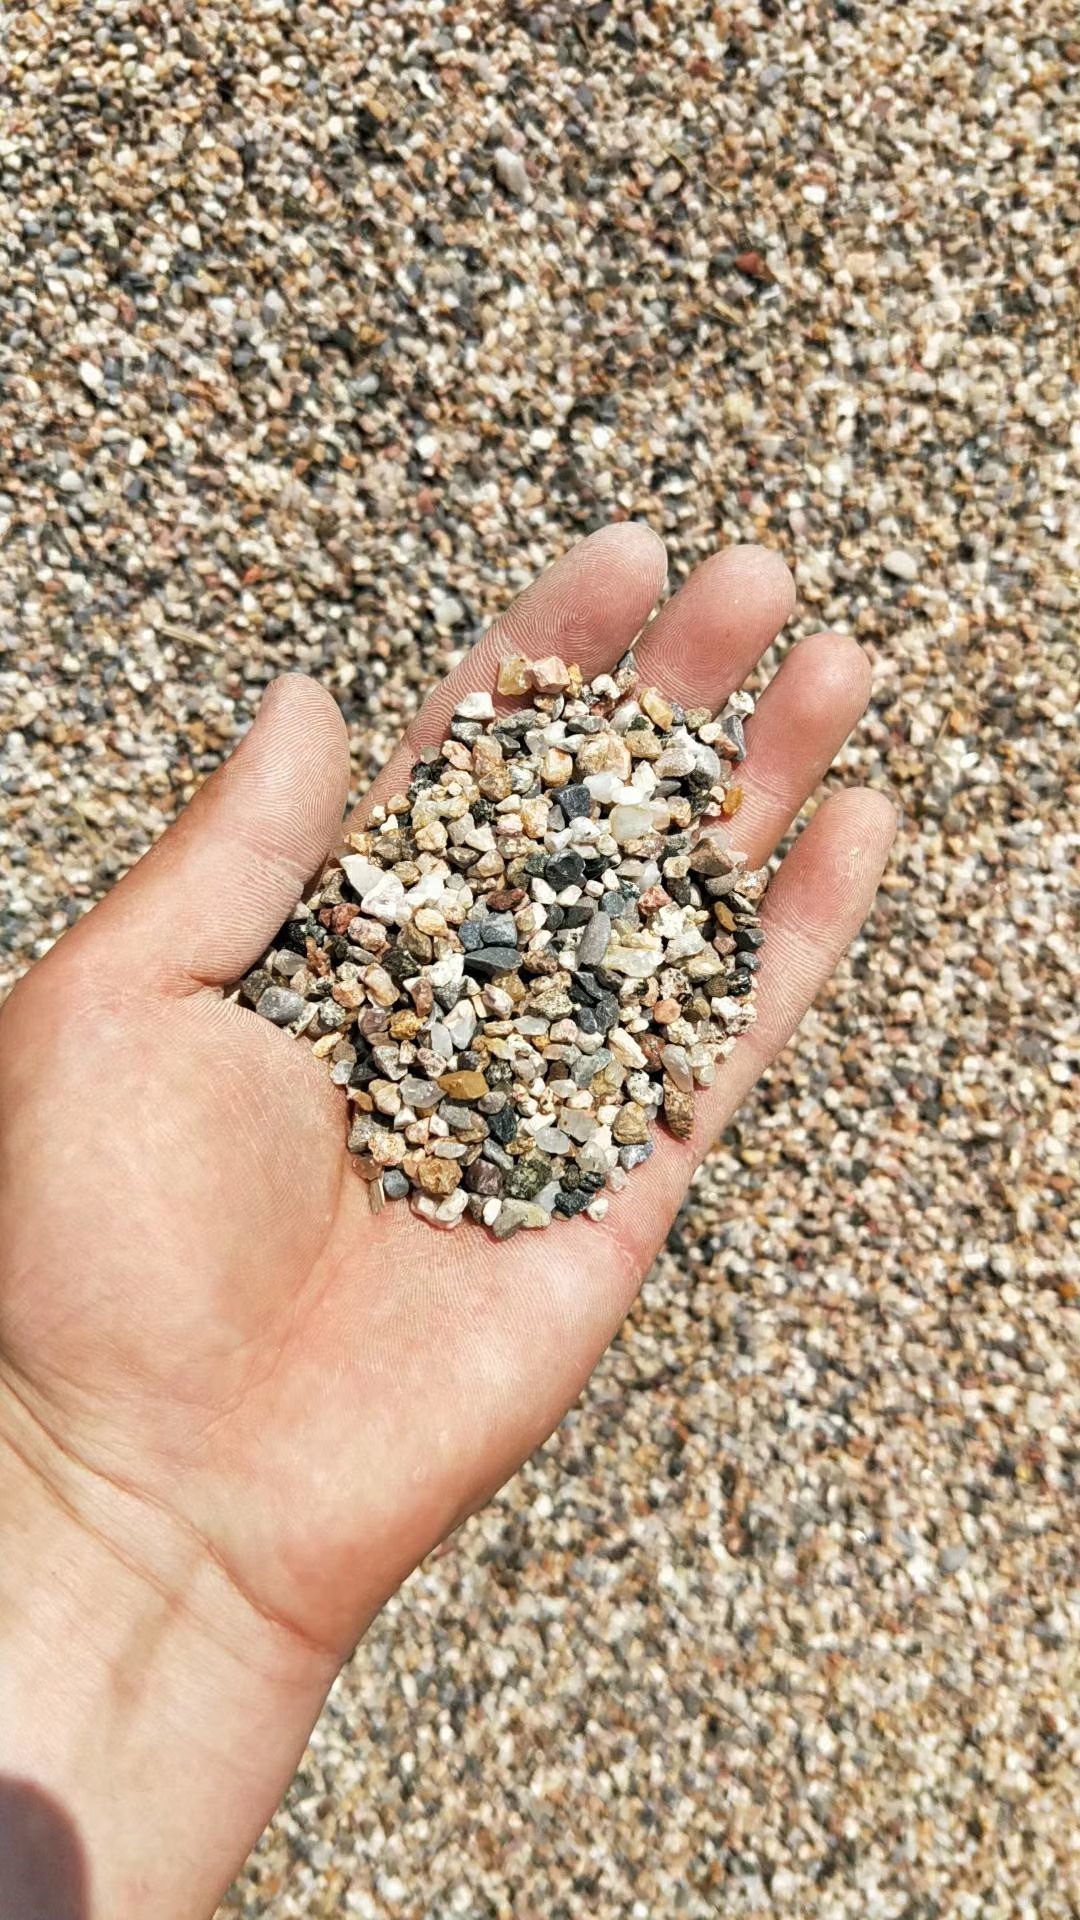 鹅卵石哪里鹅 大卵石海浪石开采基地 鹅卵石多少钱一吨 鹅卵石哪里有卖 临沂哪里有鹅卵石 临沂哪里有鹅卵石的图片